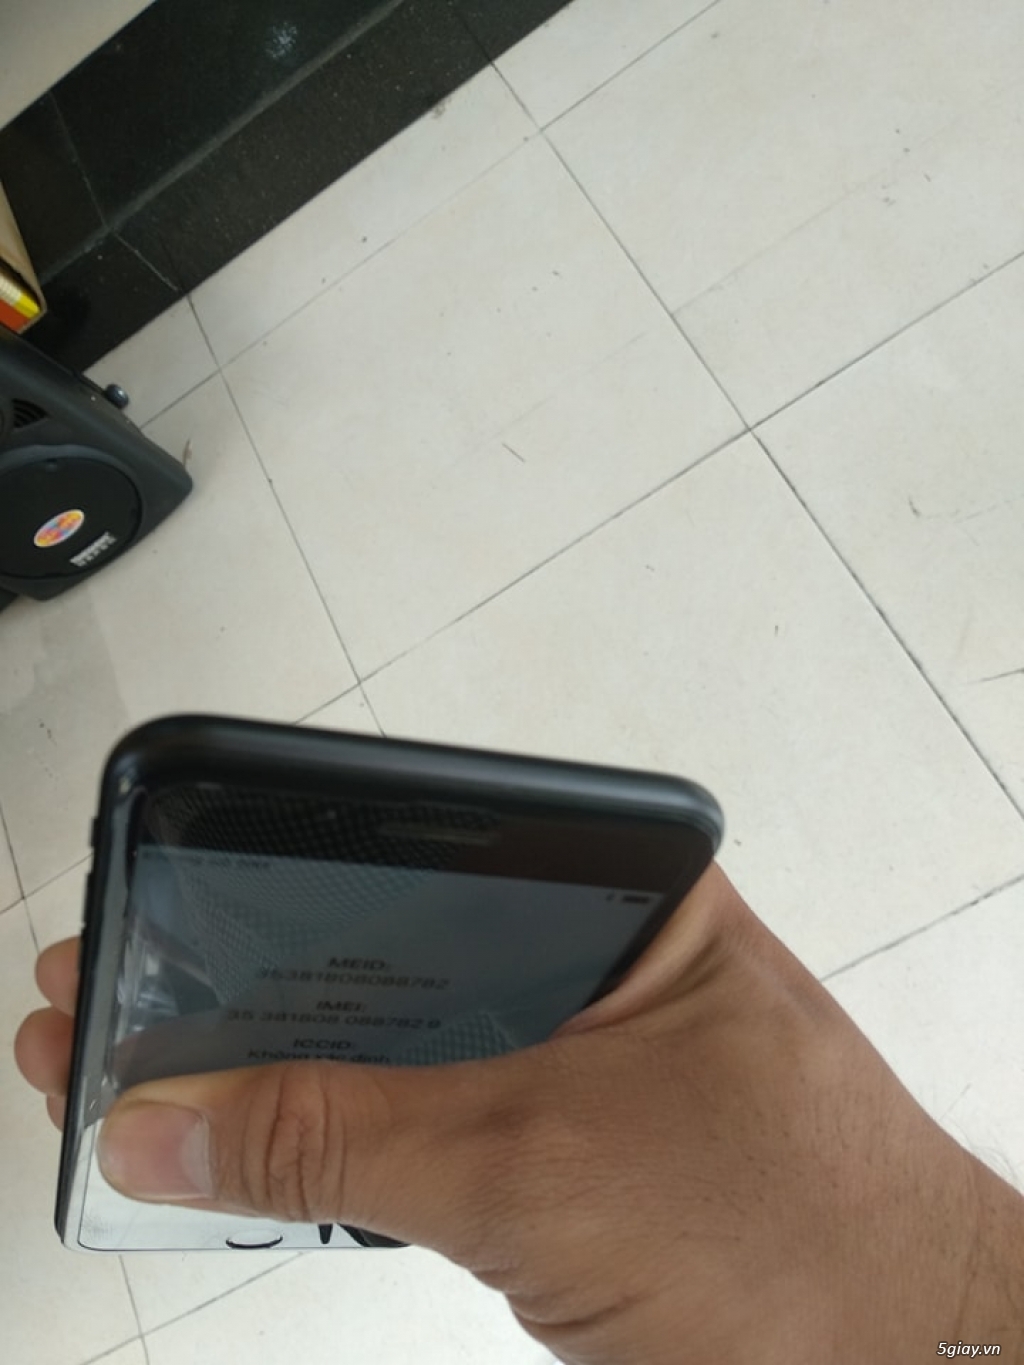 iphone 7 plus 128gb đen nhám bao zin 100%  cần bán để lên đời !!!!